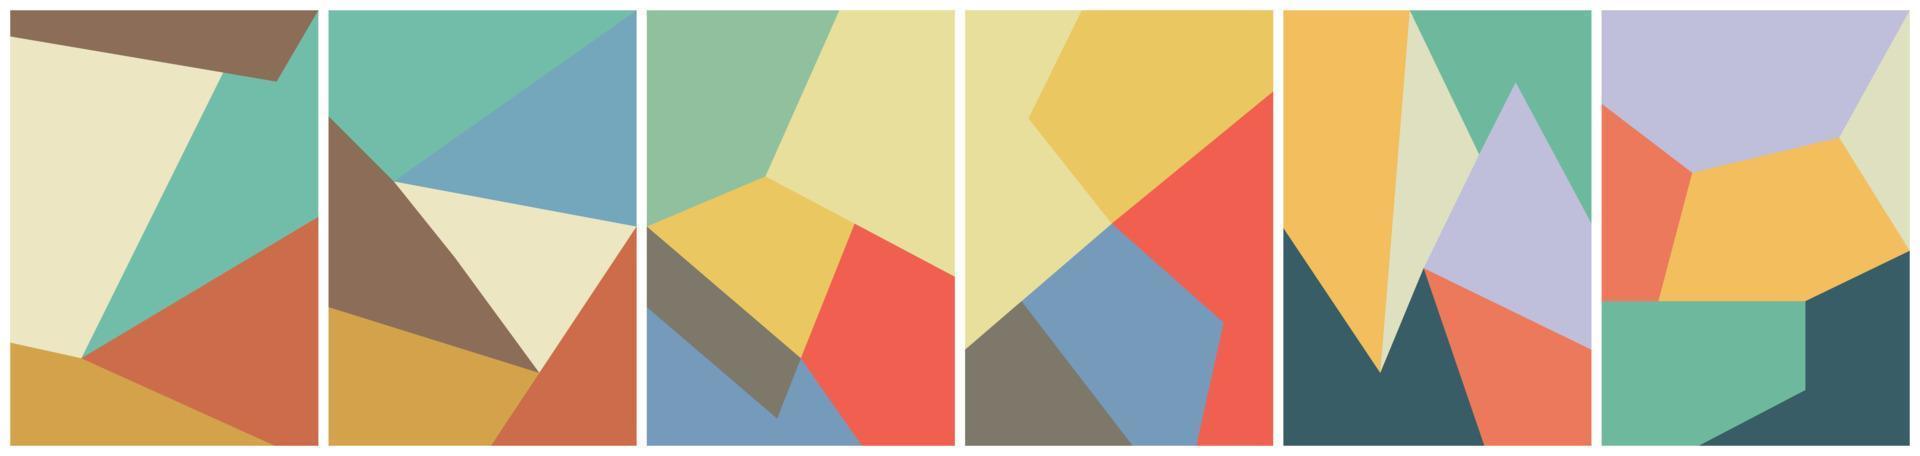 6 seis conjuntos de vectores abstractos poligonales. superposición de formas geométricas. con estilo de color vintage. Estilo retro de los 70. adecuado para folletos, portadas de libros, plantillas de redes sociales, etc.